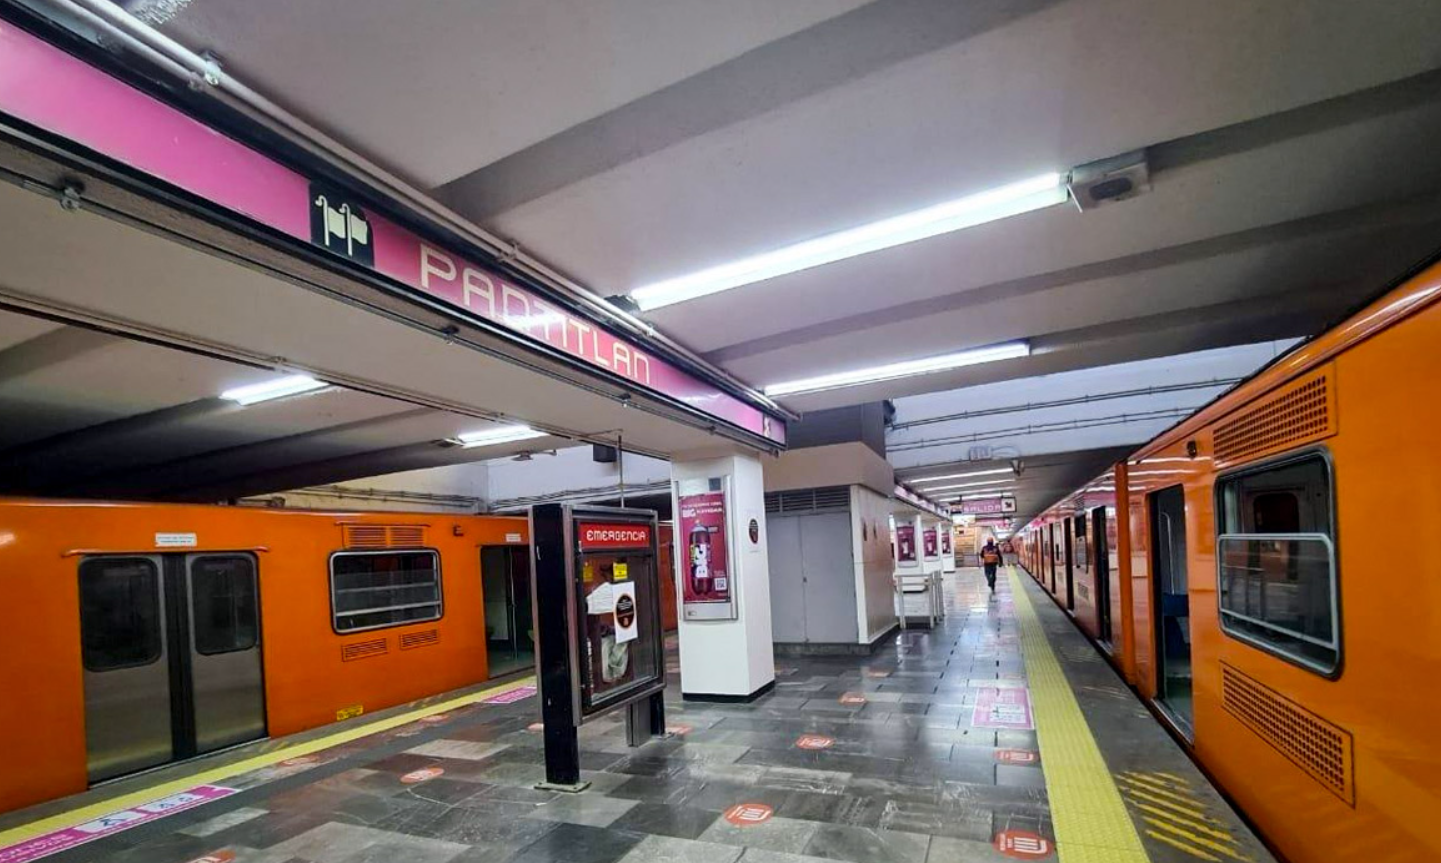 Usuaria de Tik Tok muestra el Metro de la CDMX y dice que esta muy limpio (VIDEO)